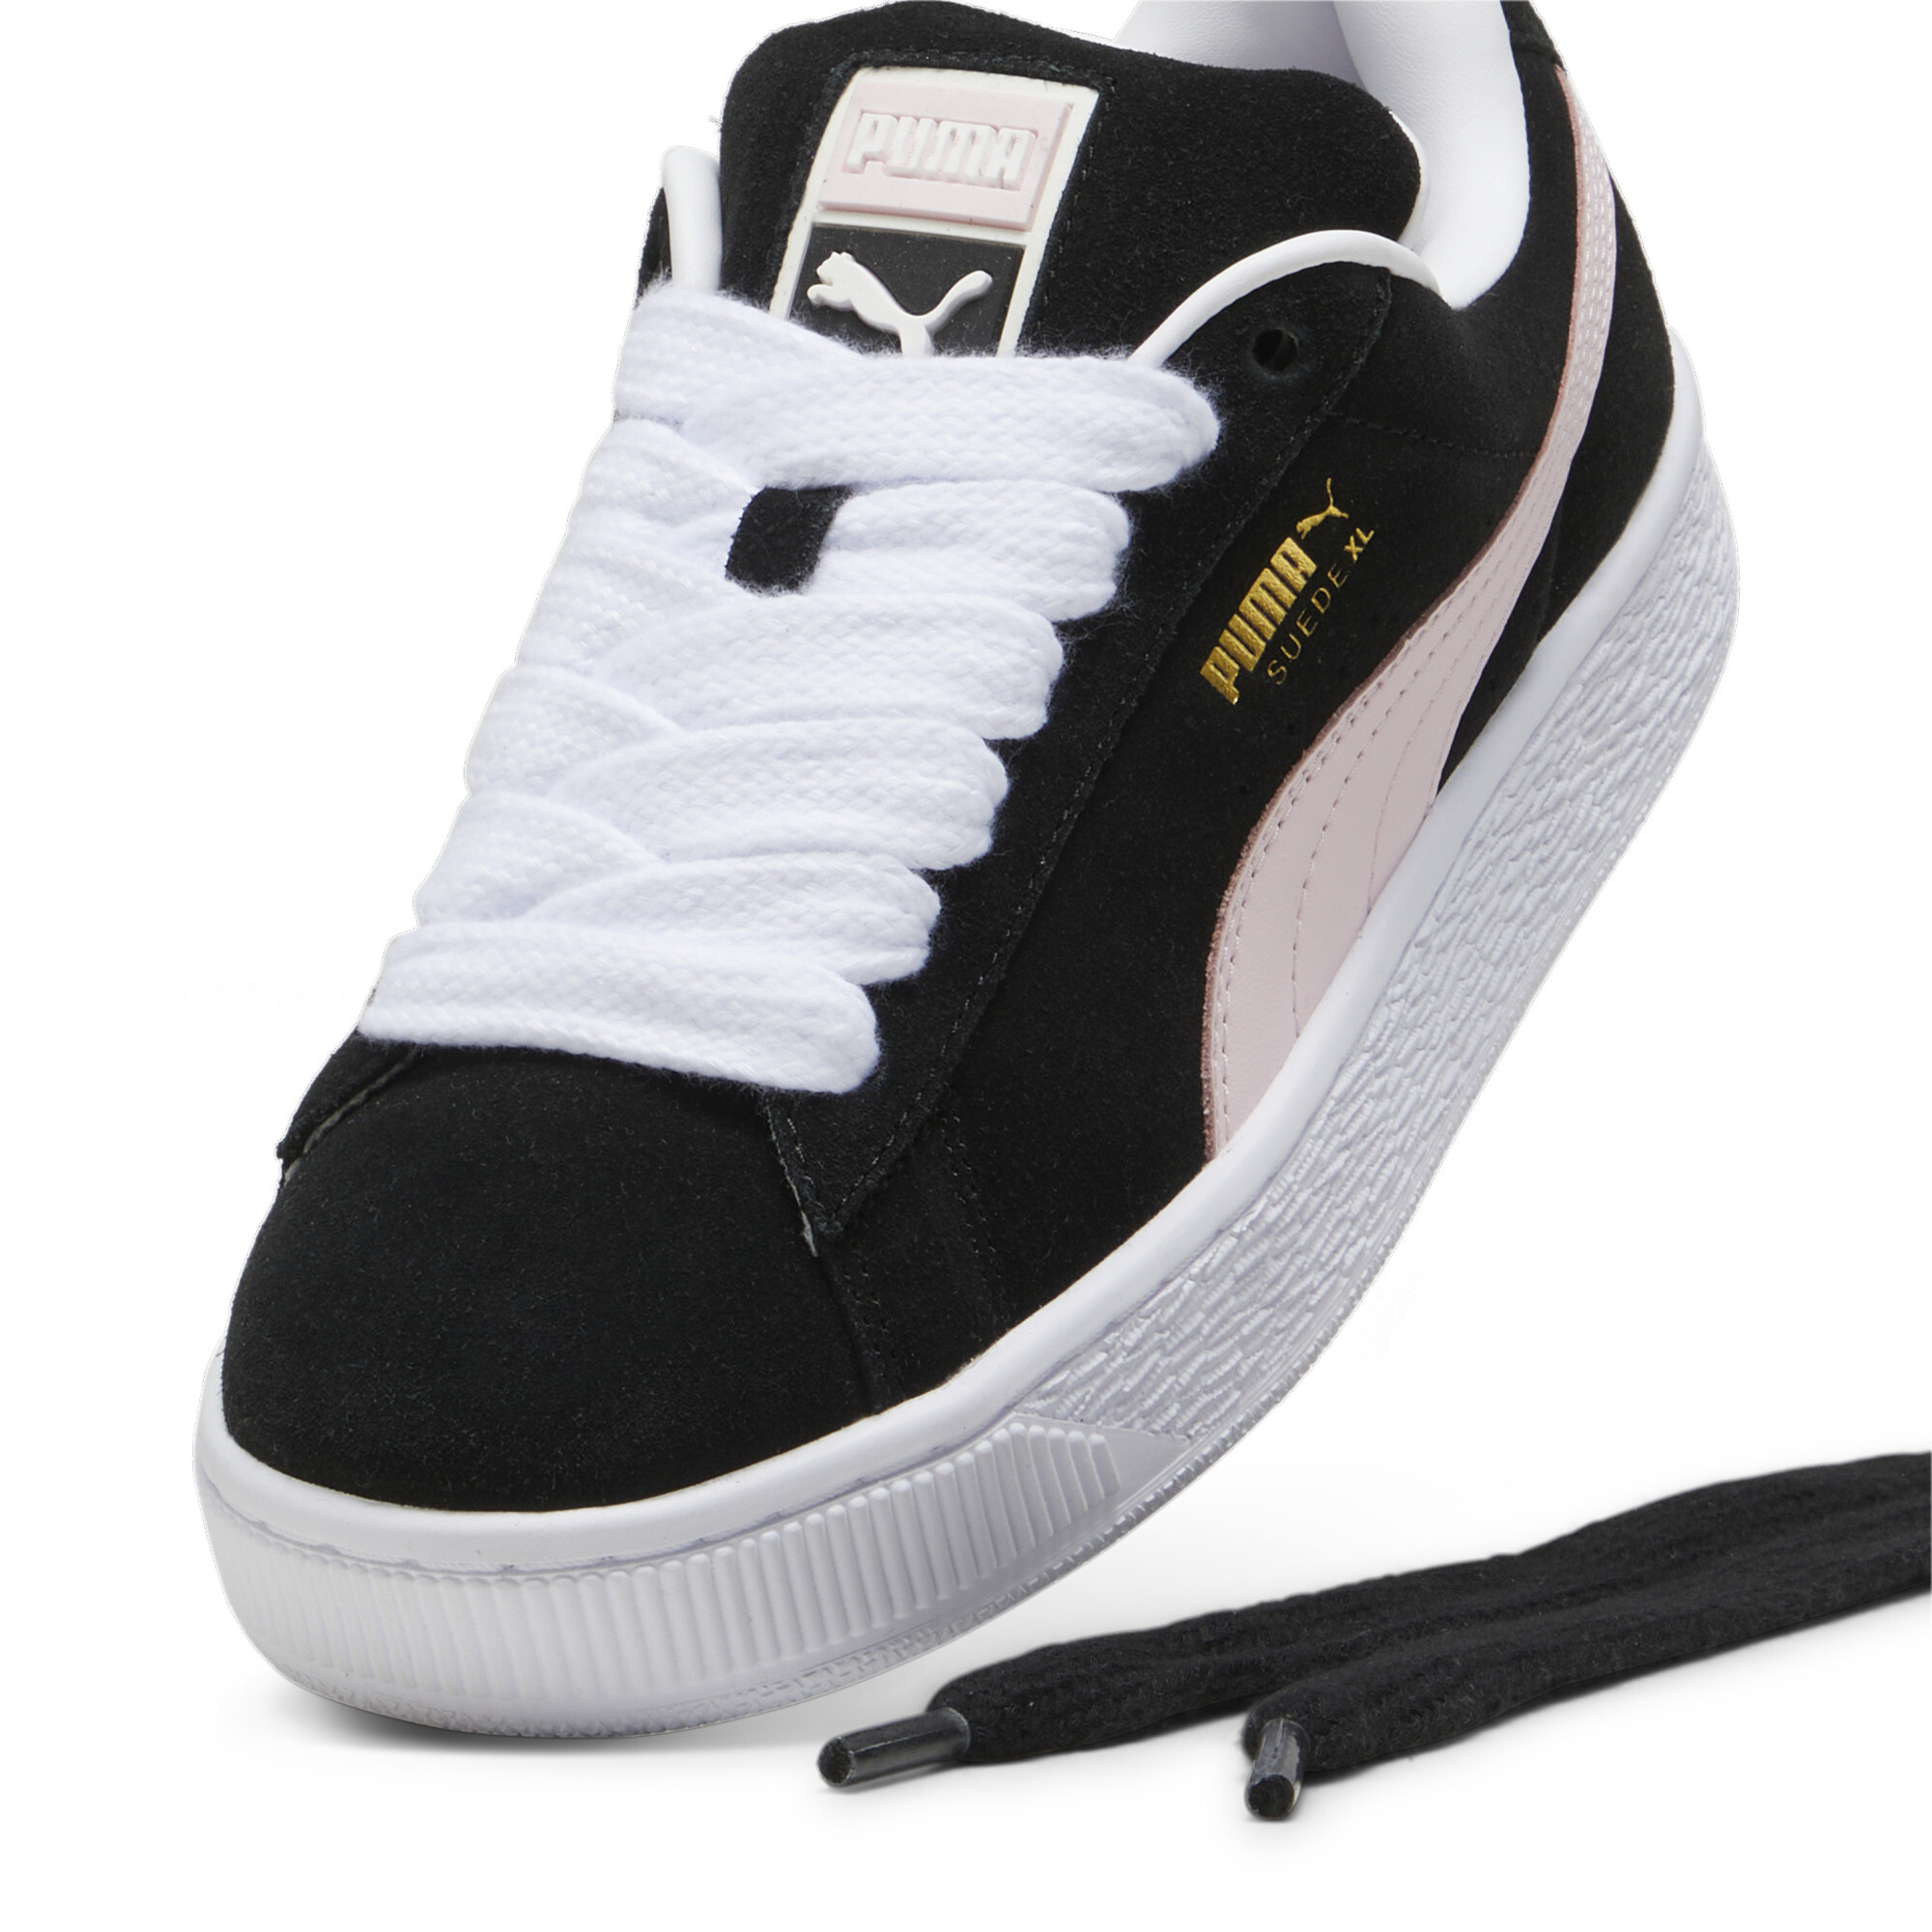 Puma Suede XL Sneakers Unisex, Black, Size 42, Shoes